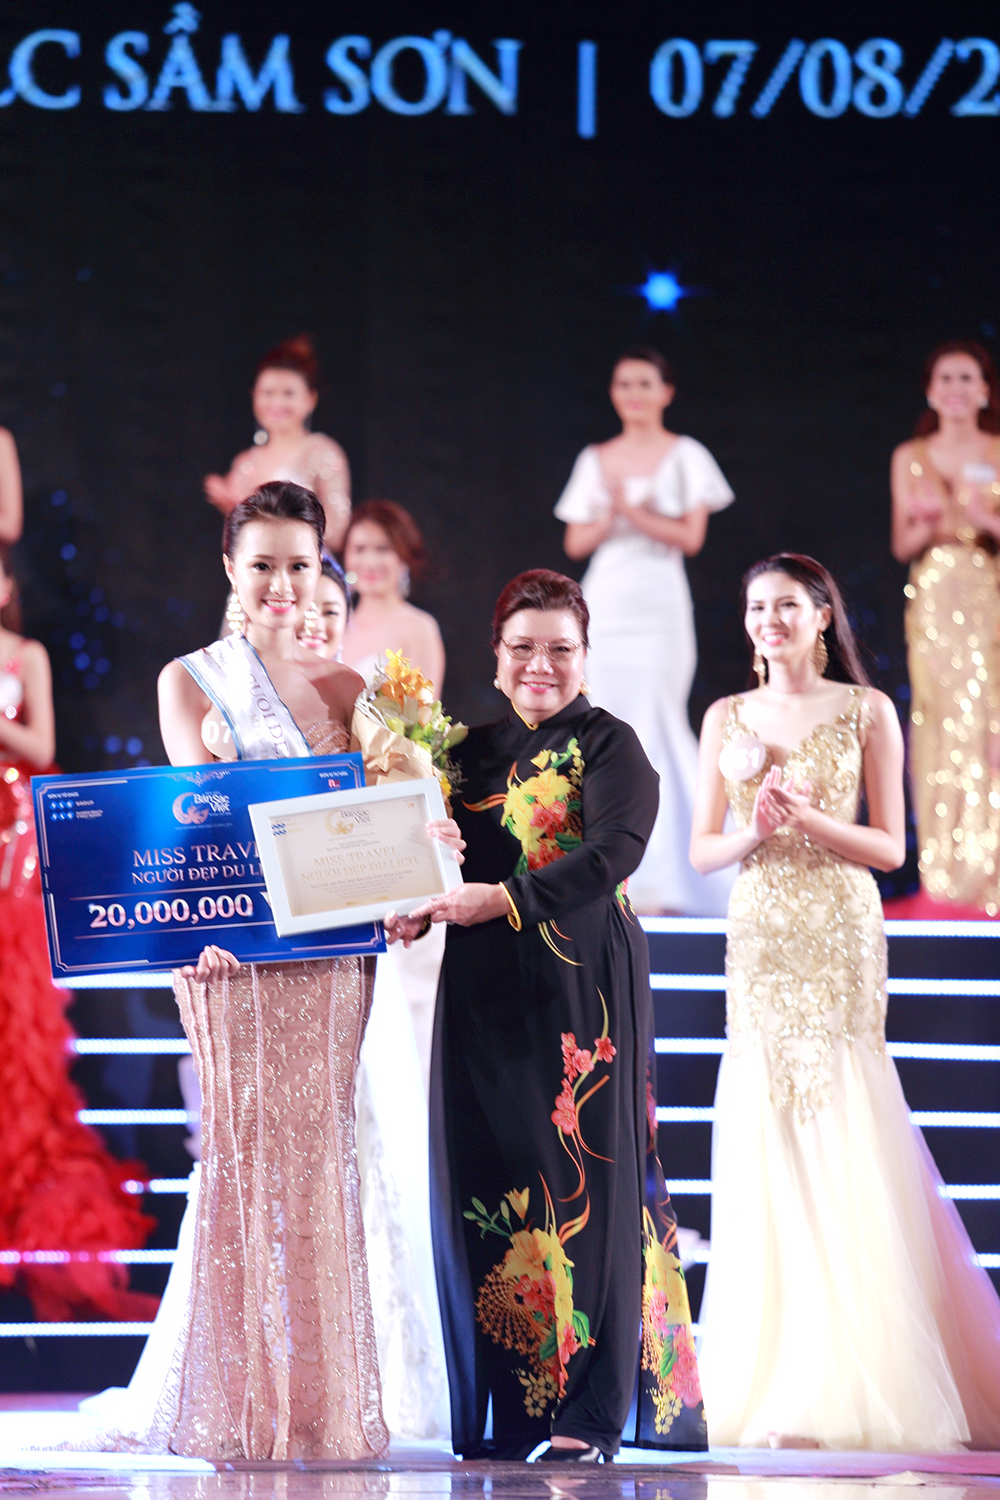  Giải Người đẹp du lịch thuộc về Bùi Thị Thu Trang